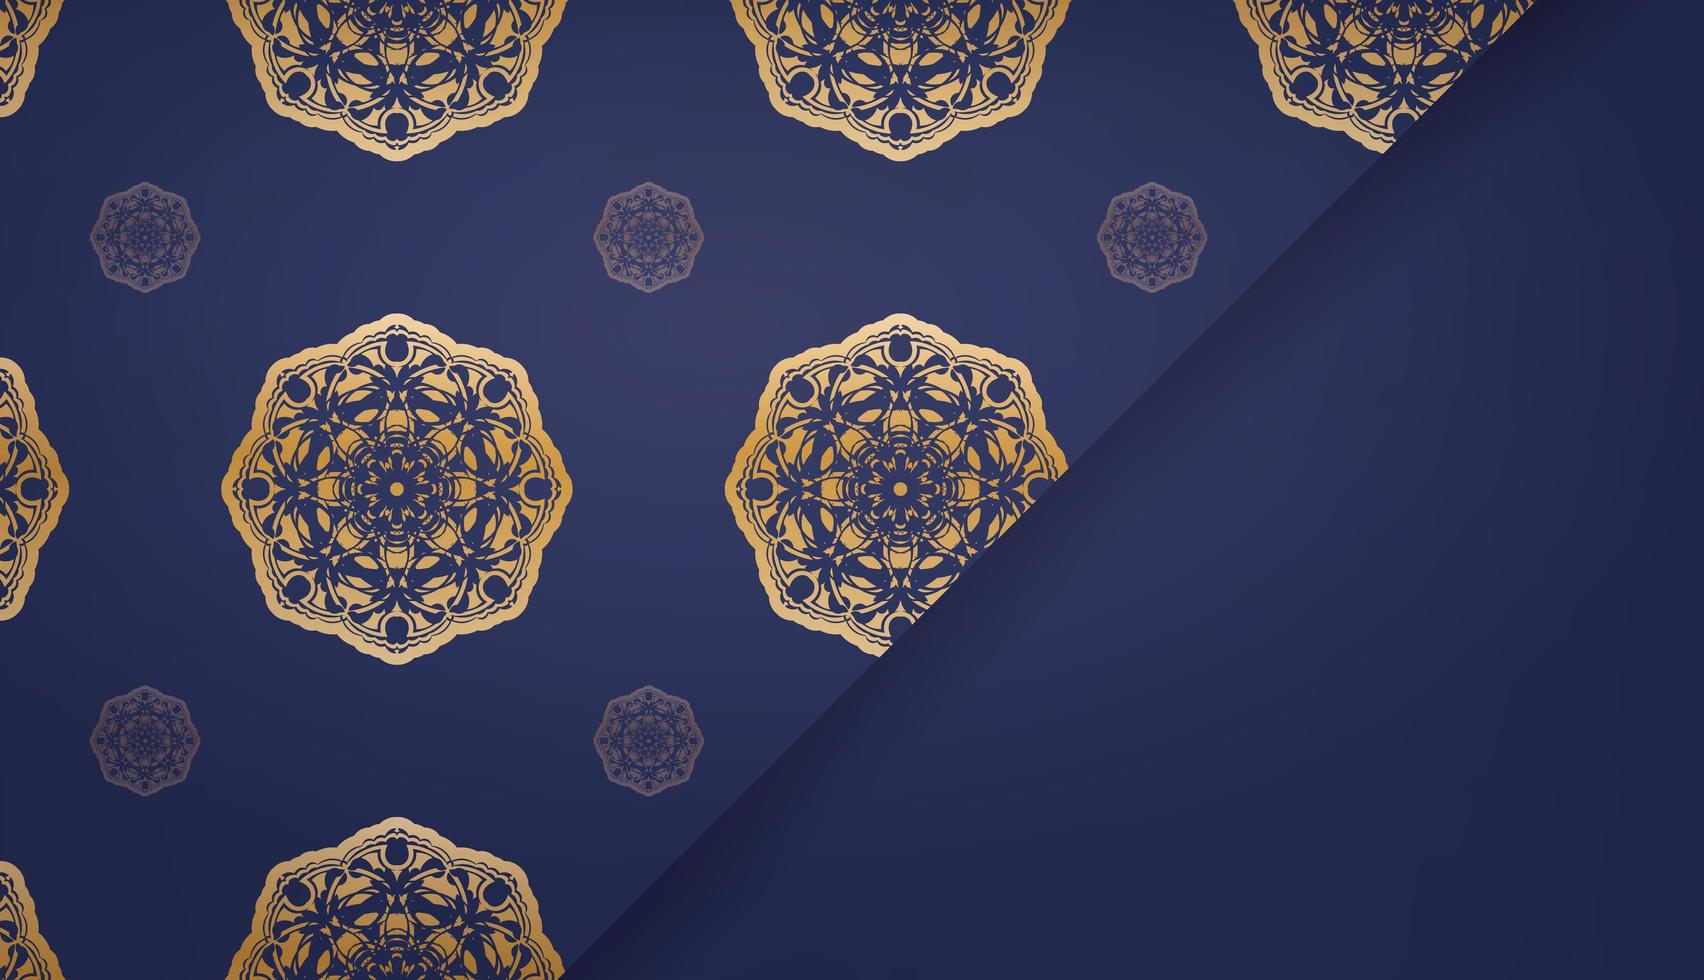 banner azul escuro com ornamentos de ouro luxuosos para design sob seu logotipo ou texto vetor